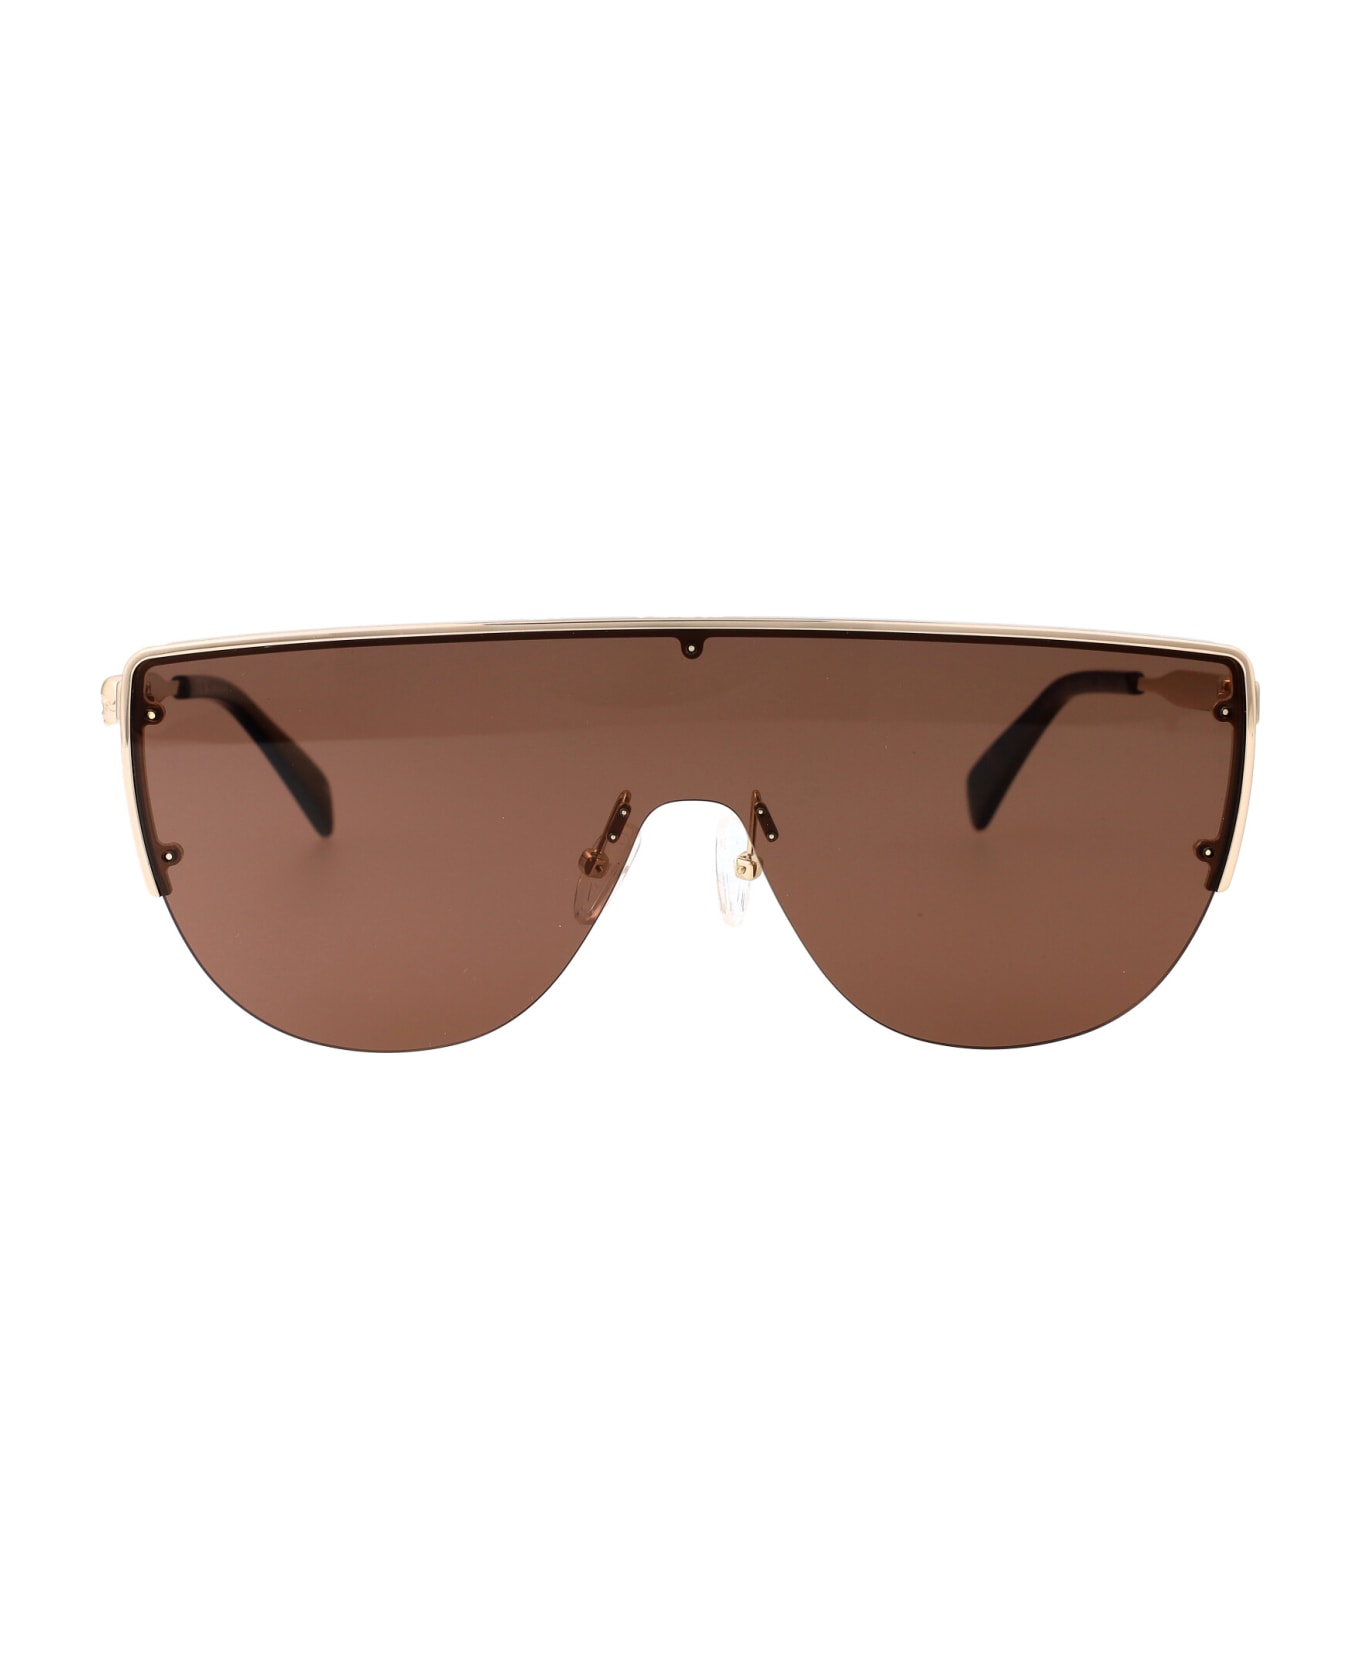 Alexander McQueen Eyewear Am0457s Sunglasses - 002 GOLD GOLD BROWN